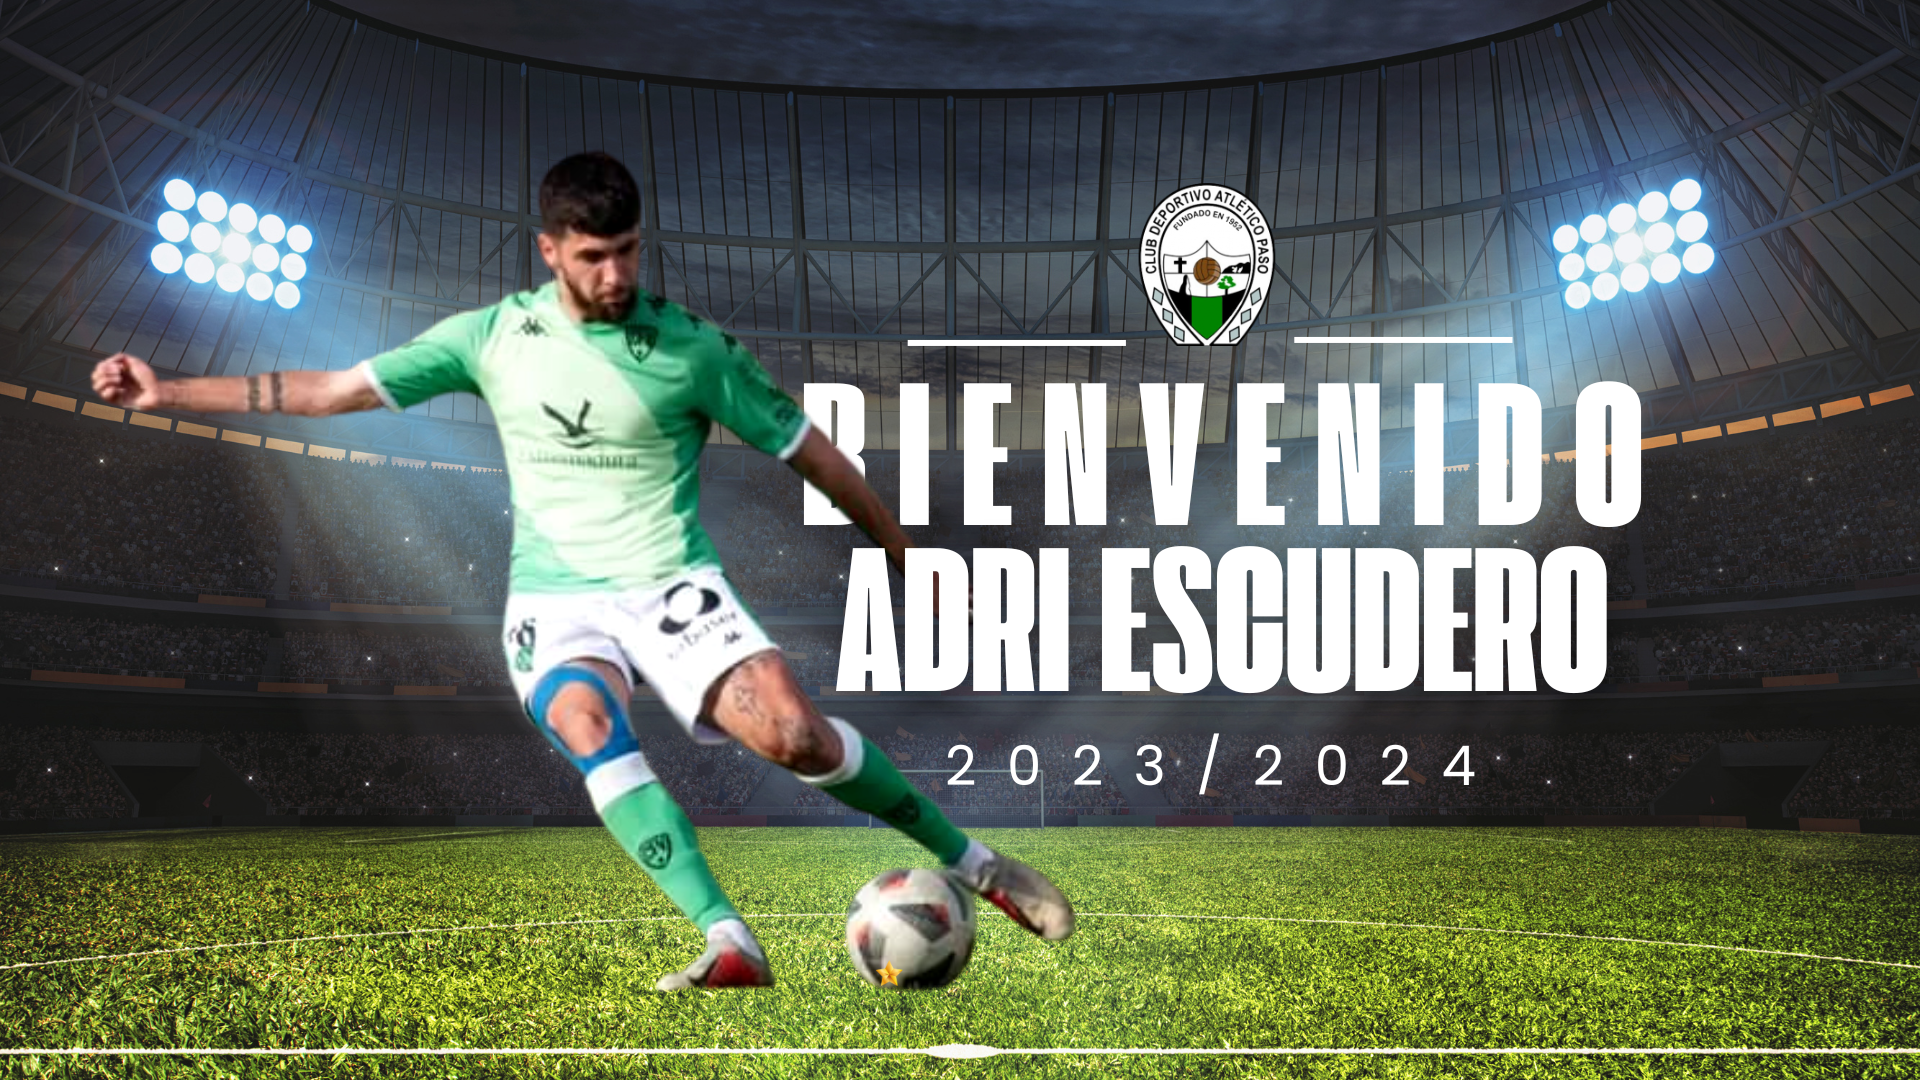 El zurdo Adri Escudero completa la línea defensiva del Atlético Paso